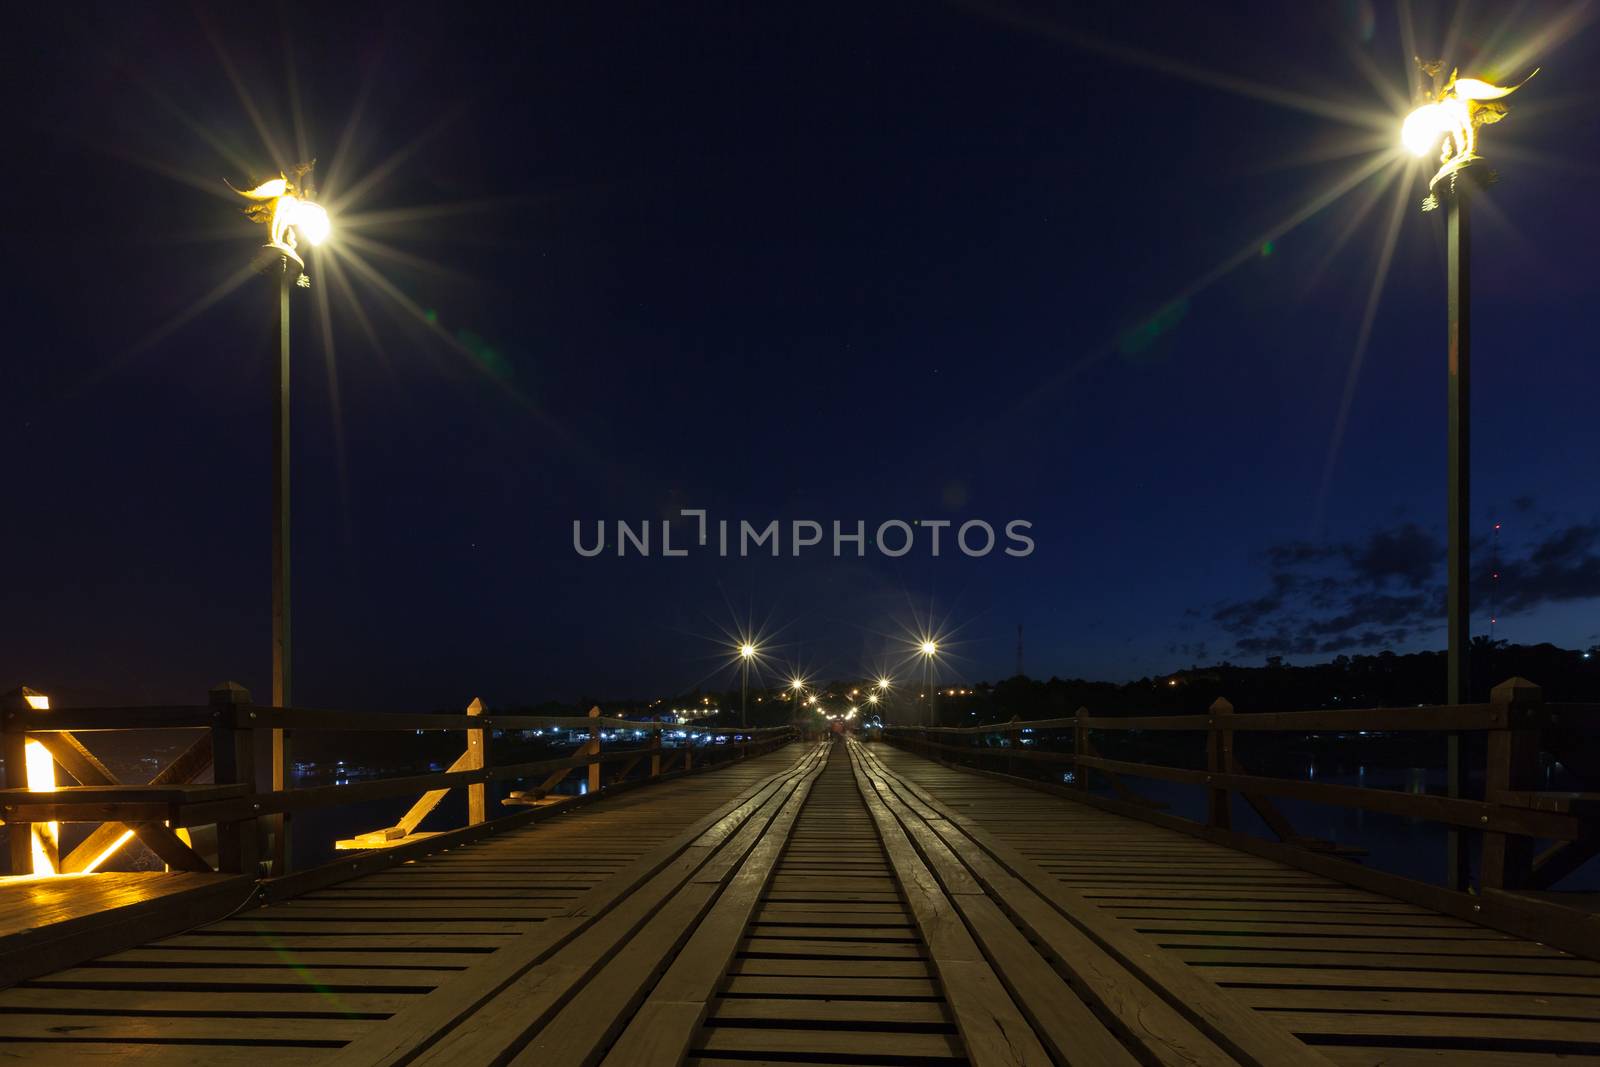 Utamanusorn Bridge (Mon Bridge), made from wooden for across the by FrameAngel